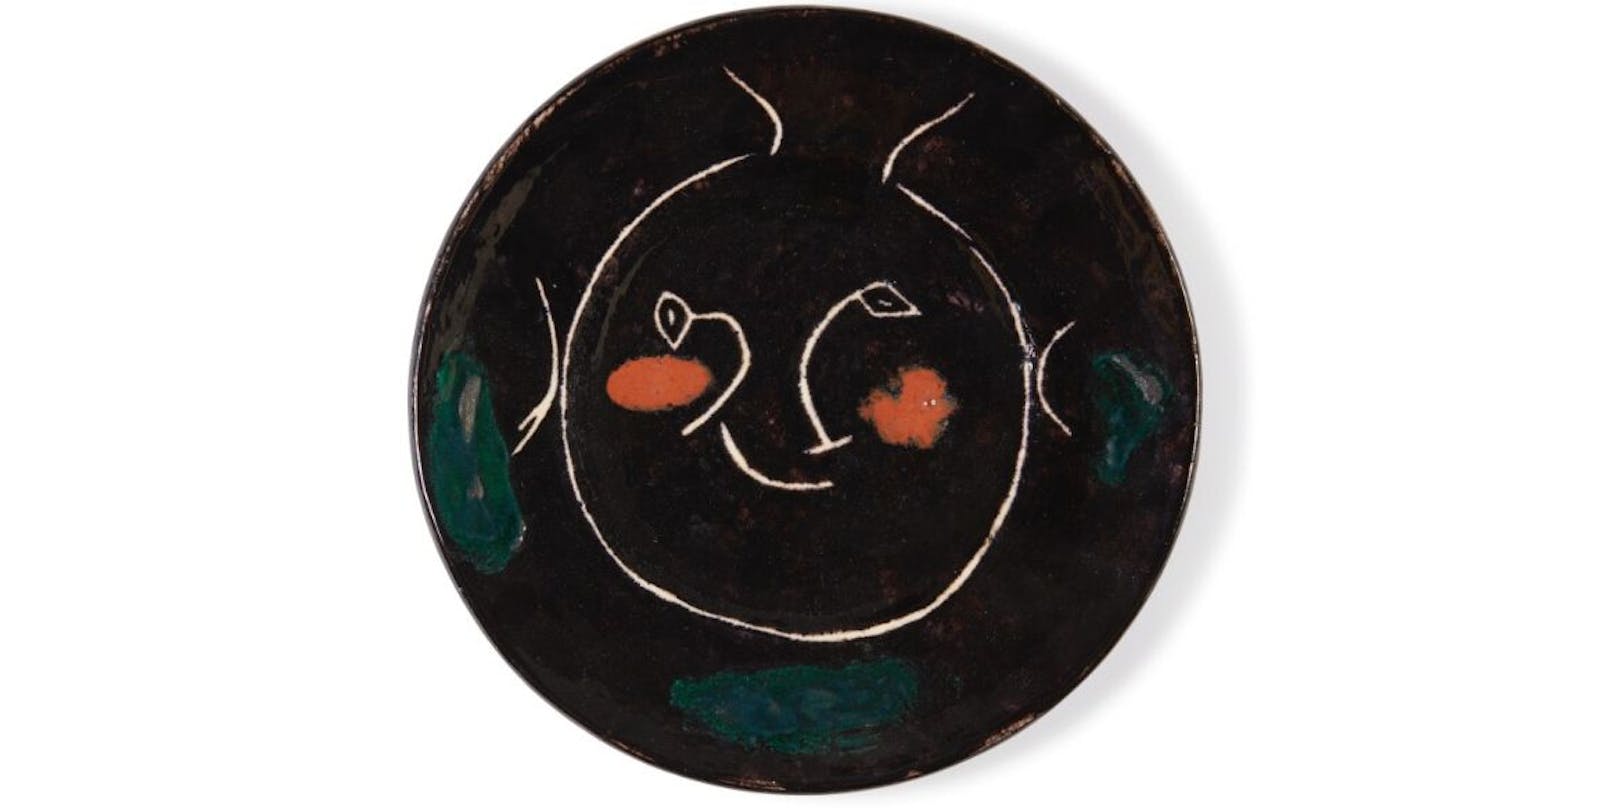 Wie sich später herausstellte, waren die Keramikteller Teil von Pablo Picassos Reihe "Visage Noir", die er in den 40er-Jahren in einem Tonstudio in Südfrankreich produzierte.